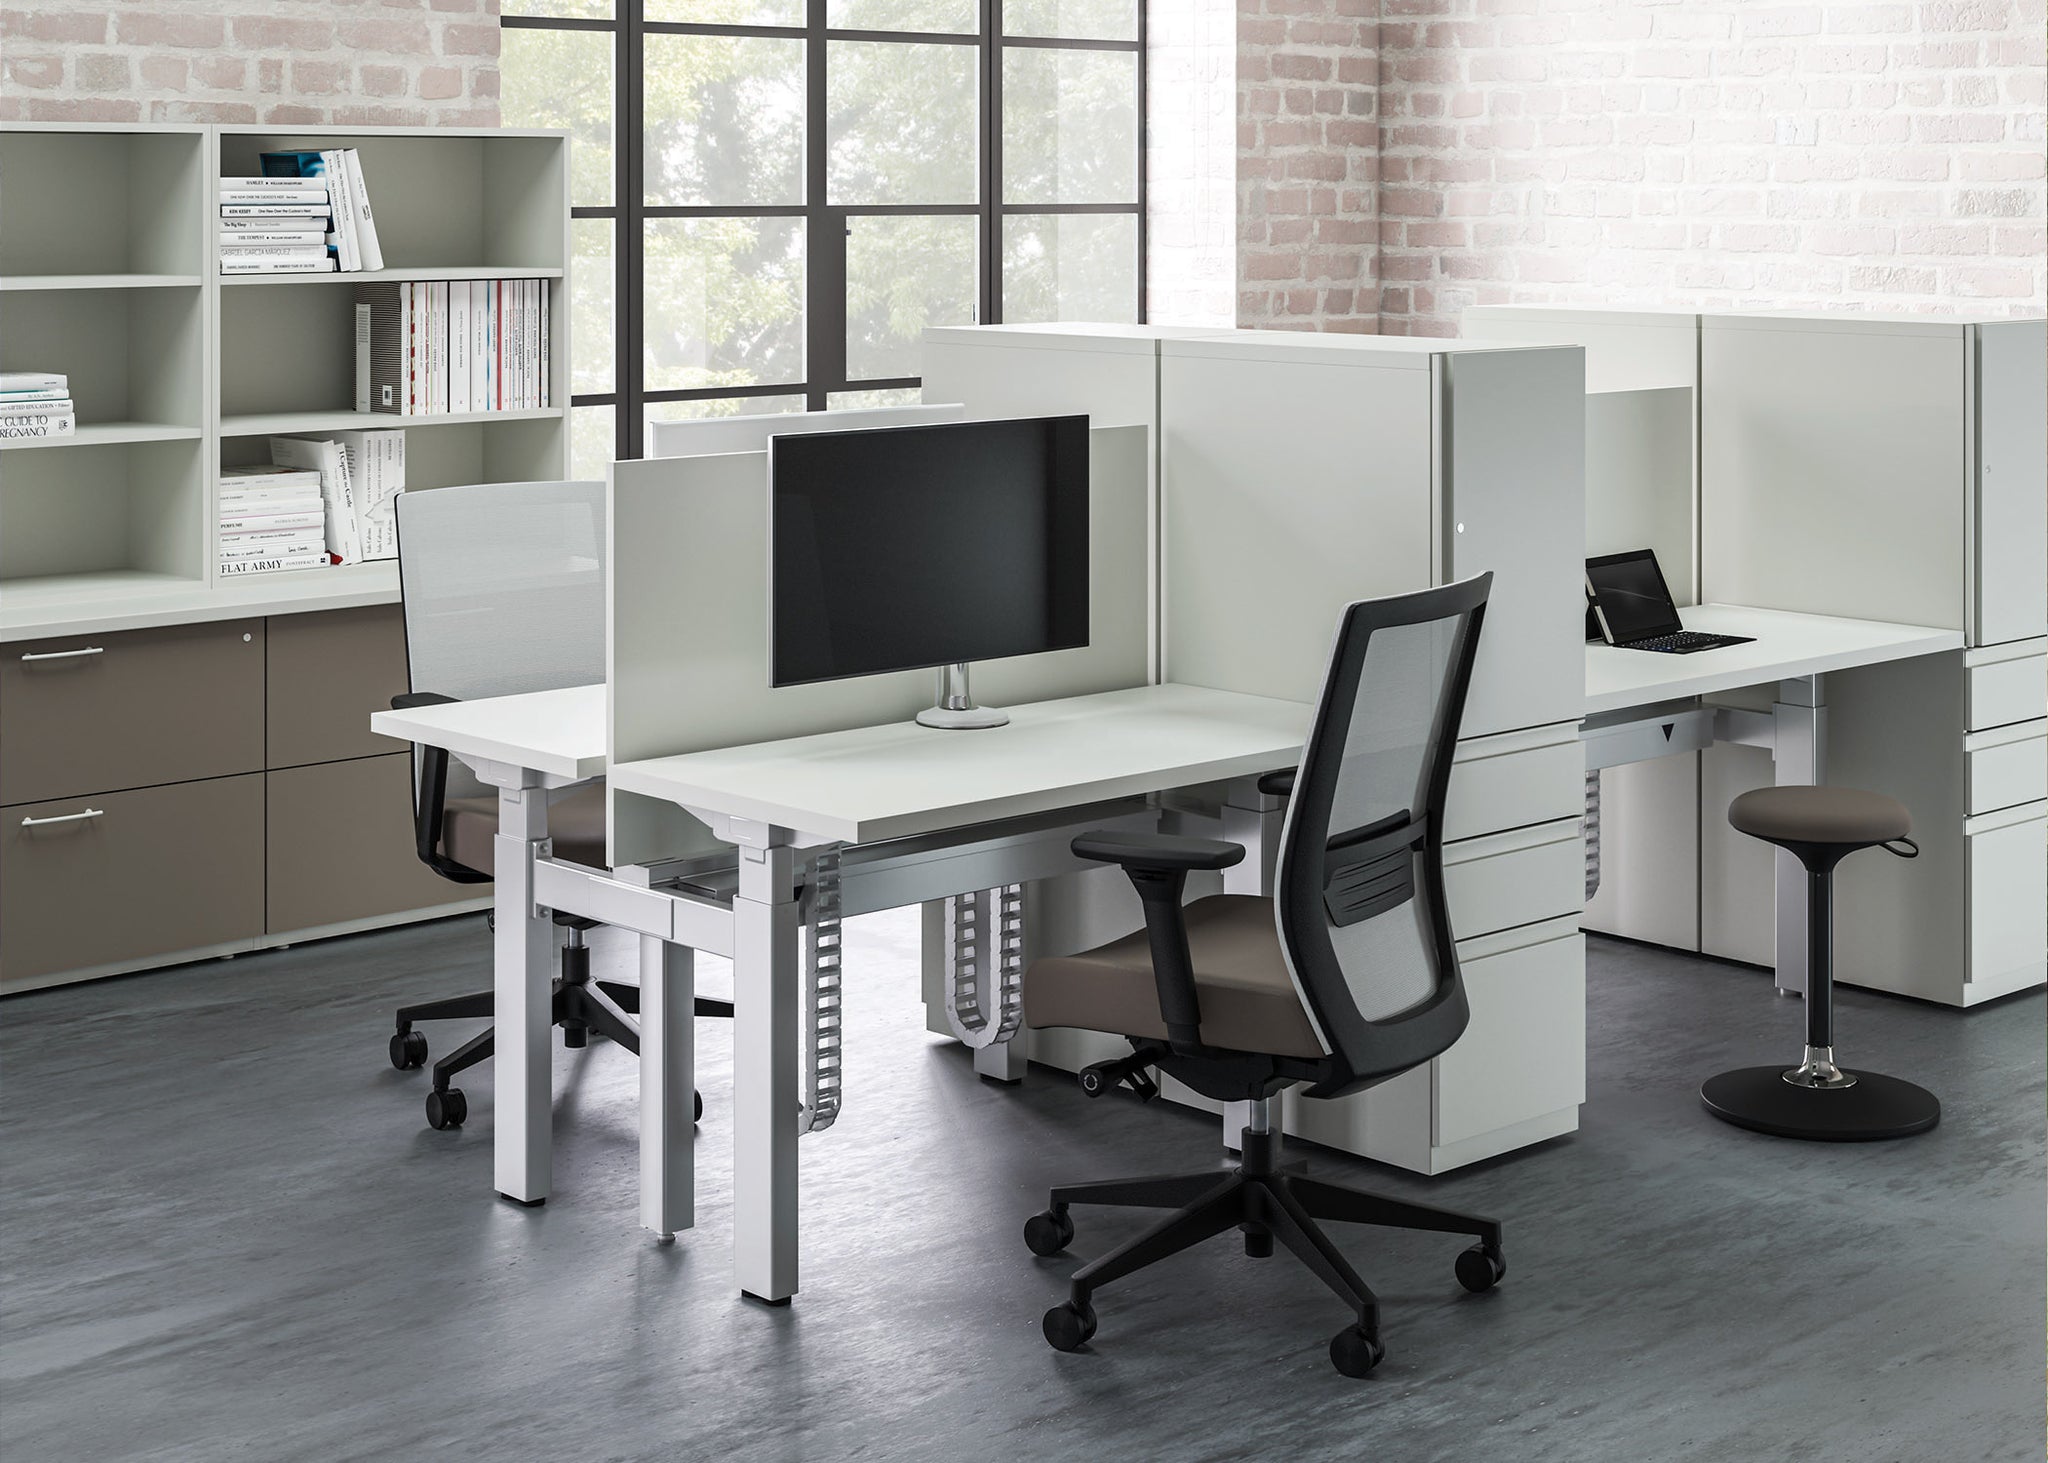 Ergonomically, How Do Standing Desks Compare to Sitting Desks?